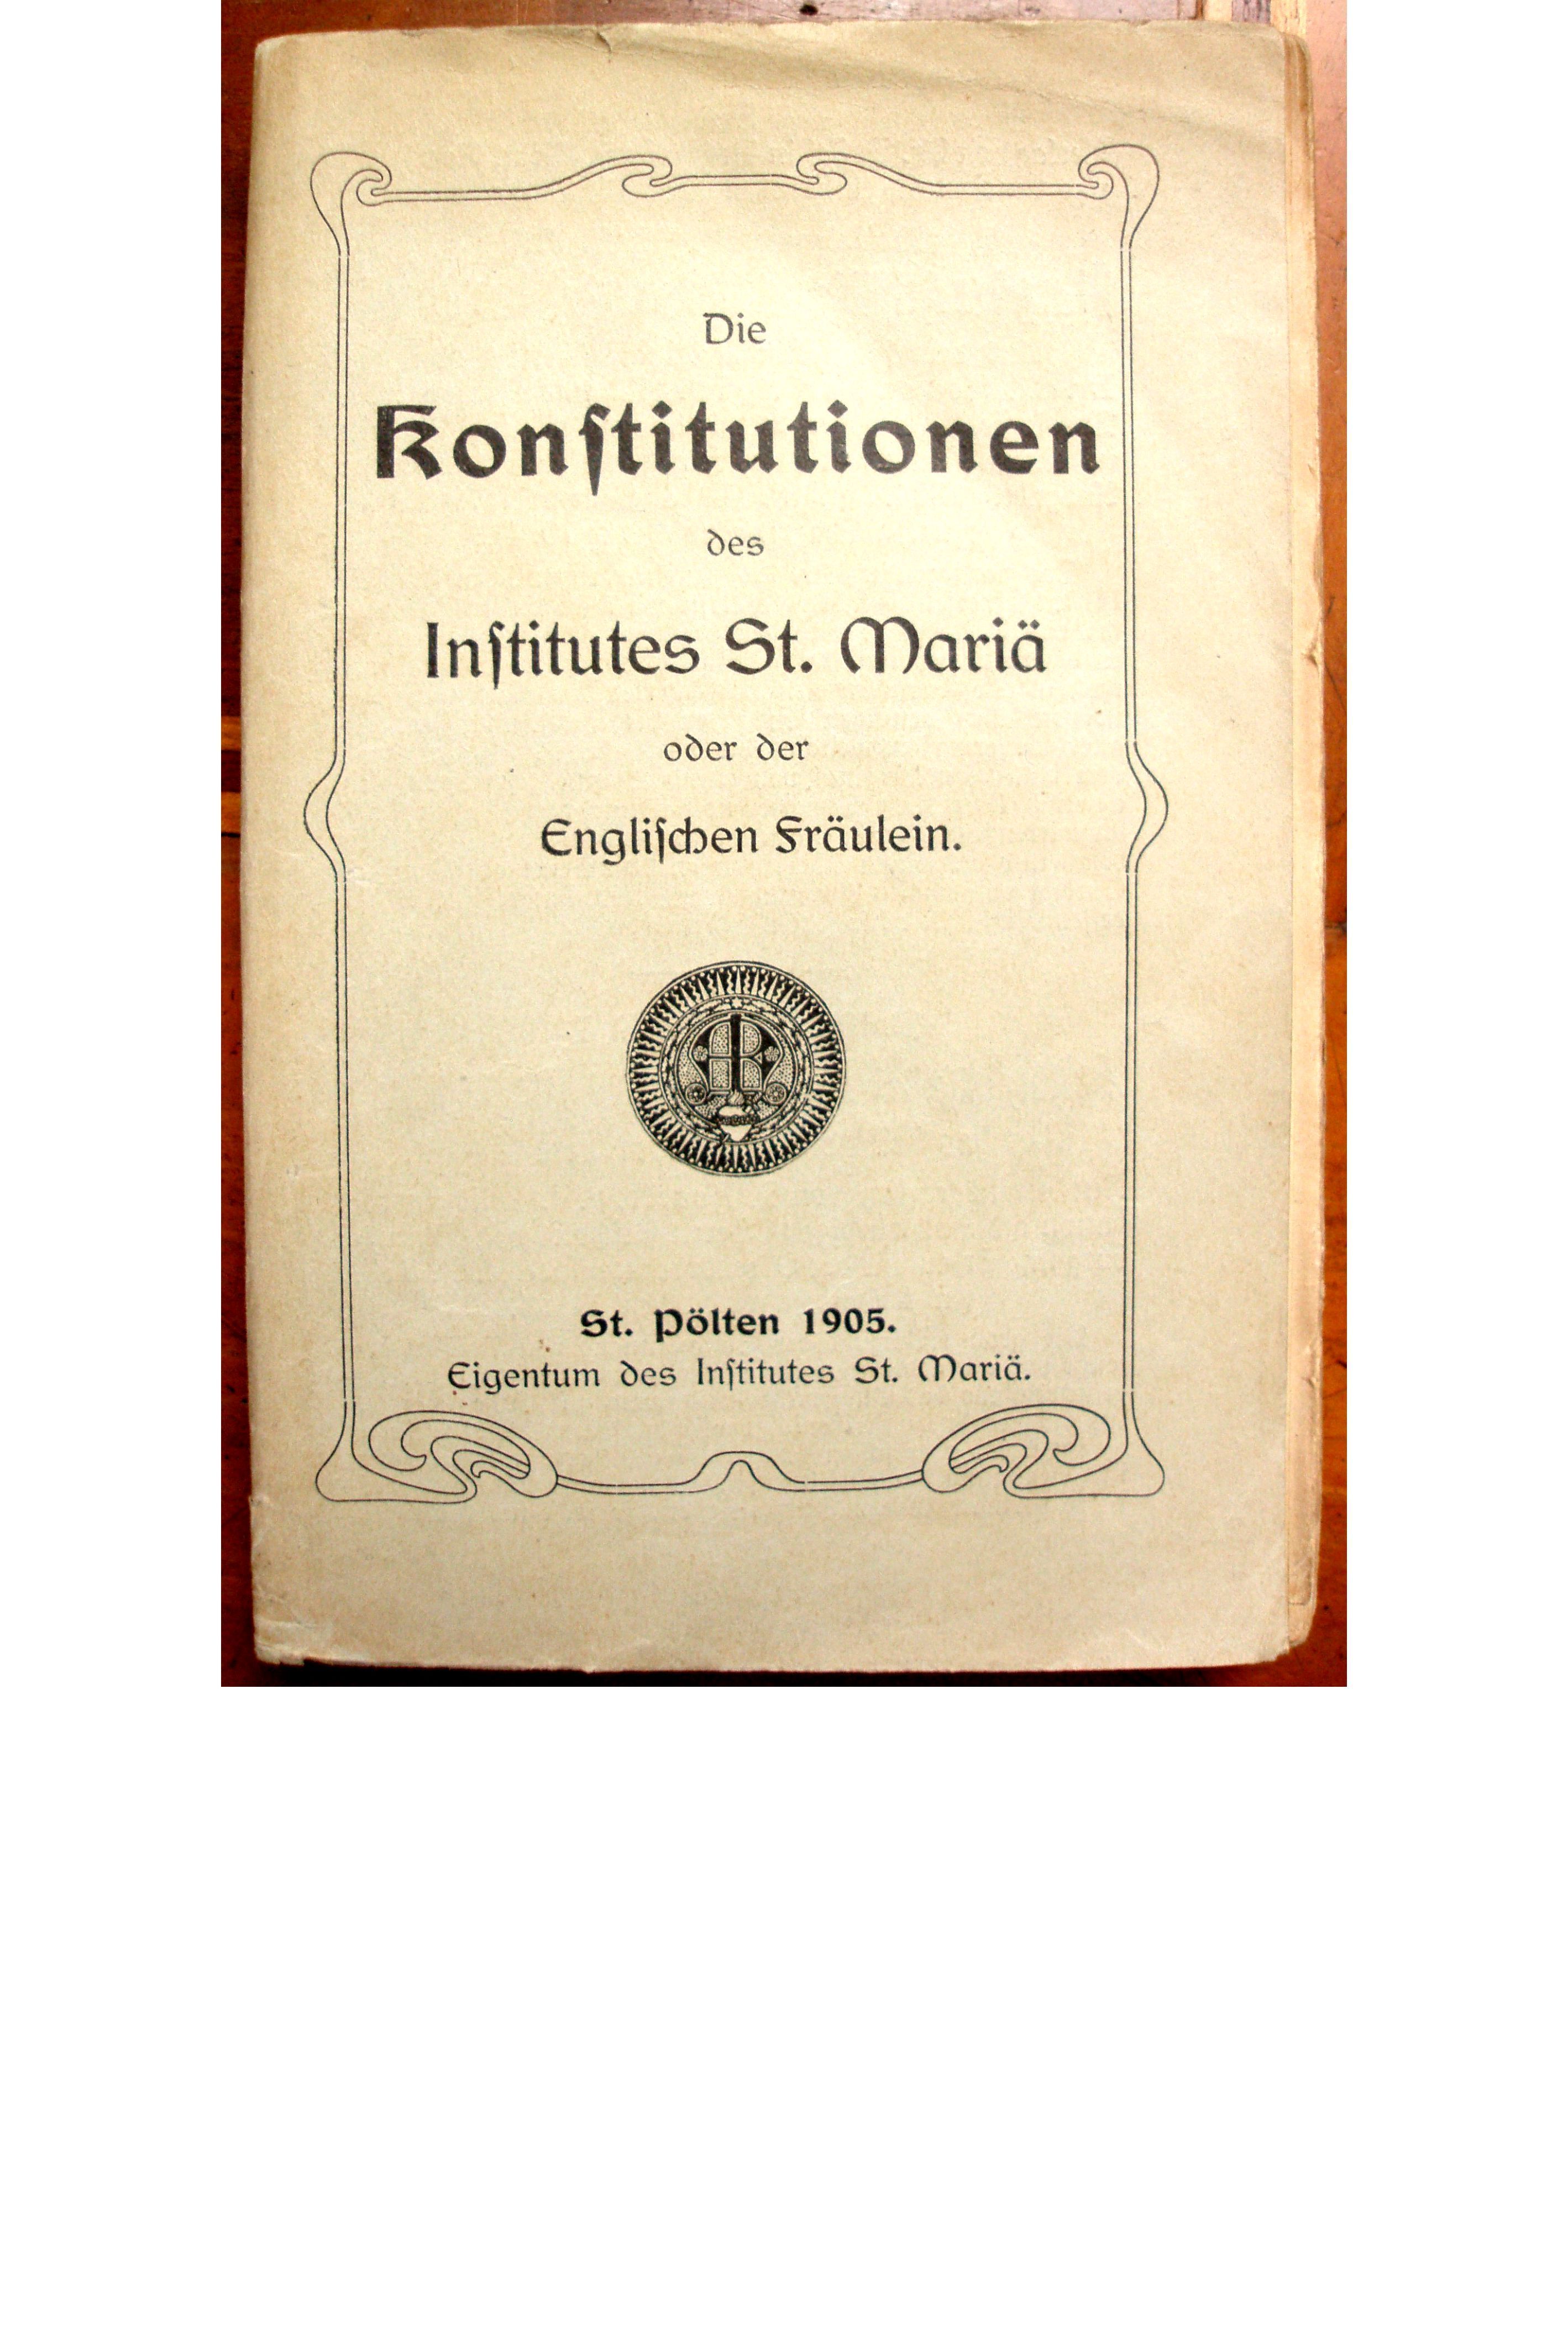 Konstitutionen-1905-centerpage.jpg